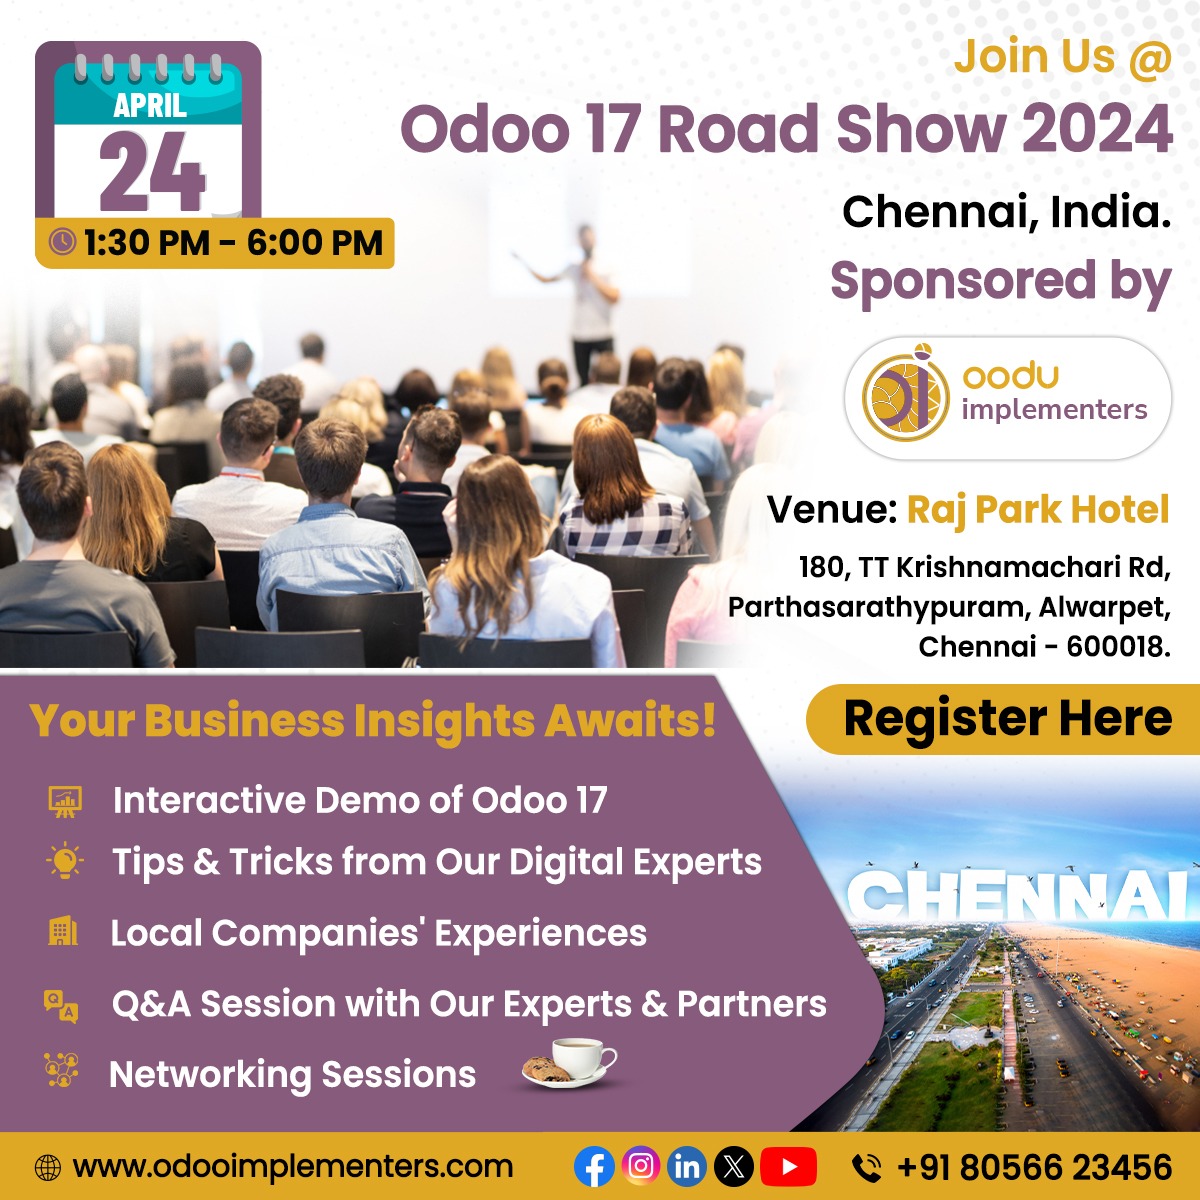 Odoo 17 Road Show at Chennai